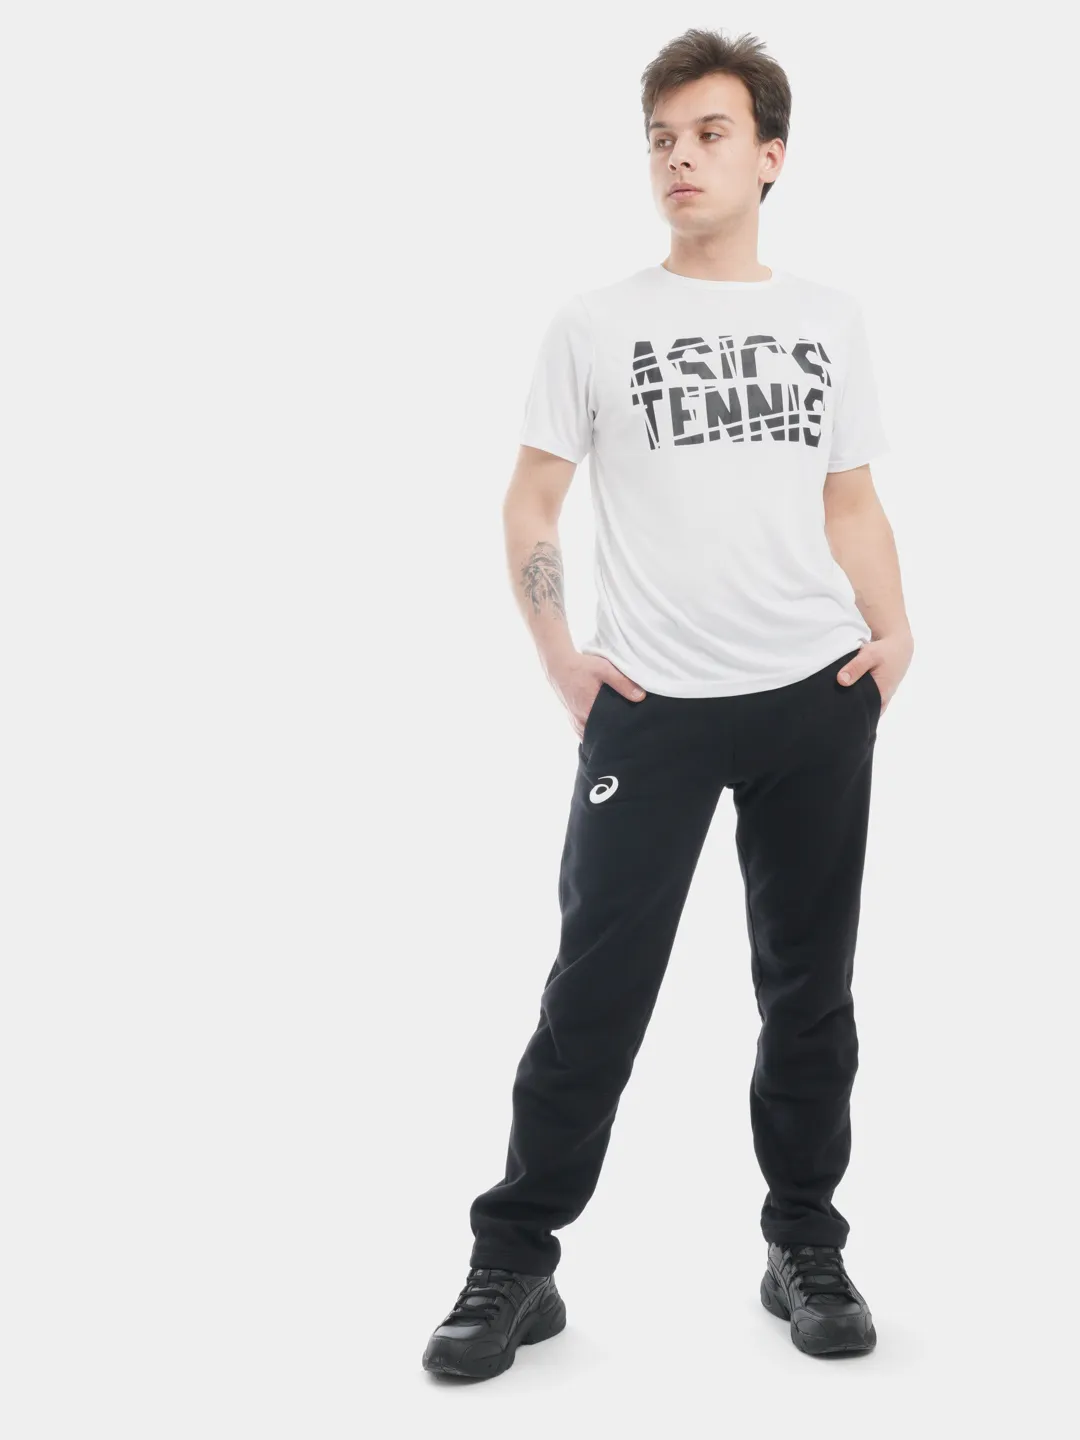 Брюки мужские спортивные утепленные, штаны ASICS MAN WINTER PANT купить поцене 2179 ₽ в интернет-магазине KazanExpress